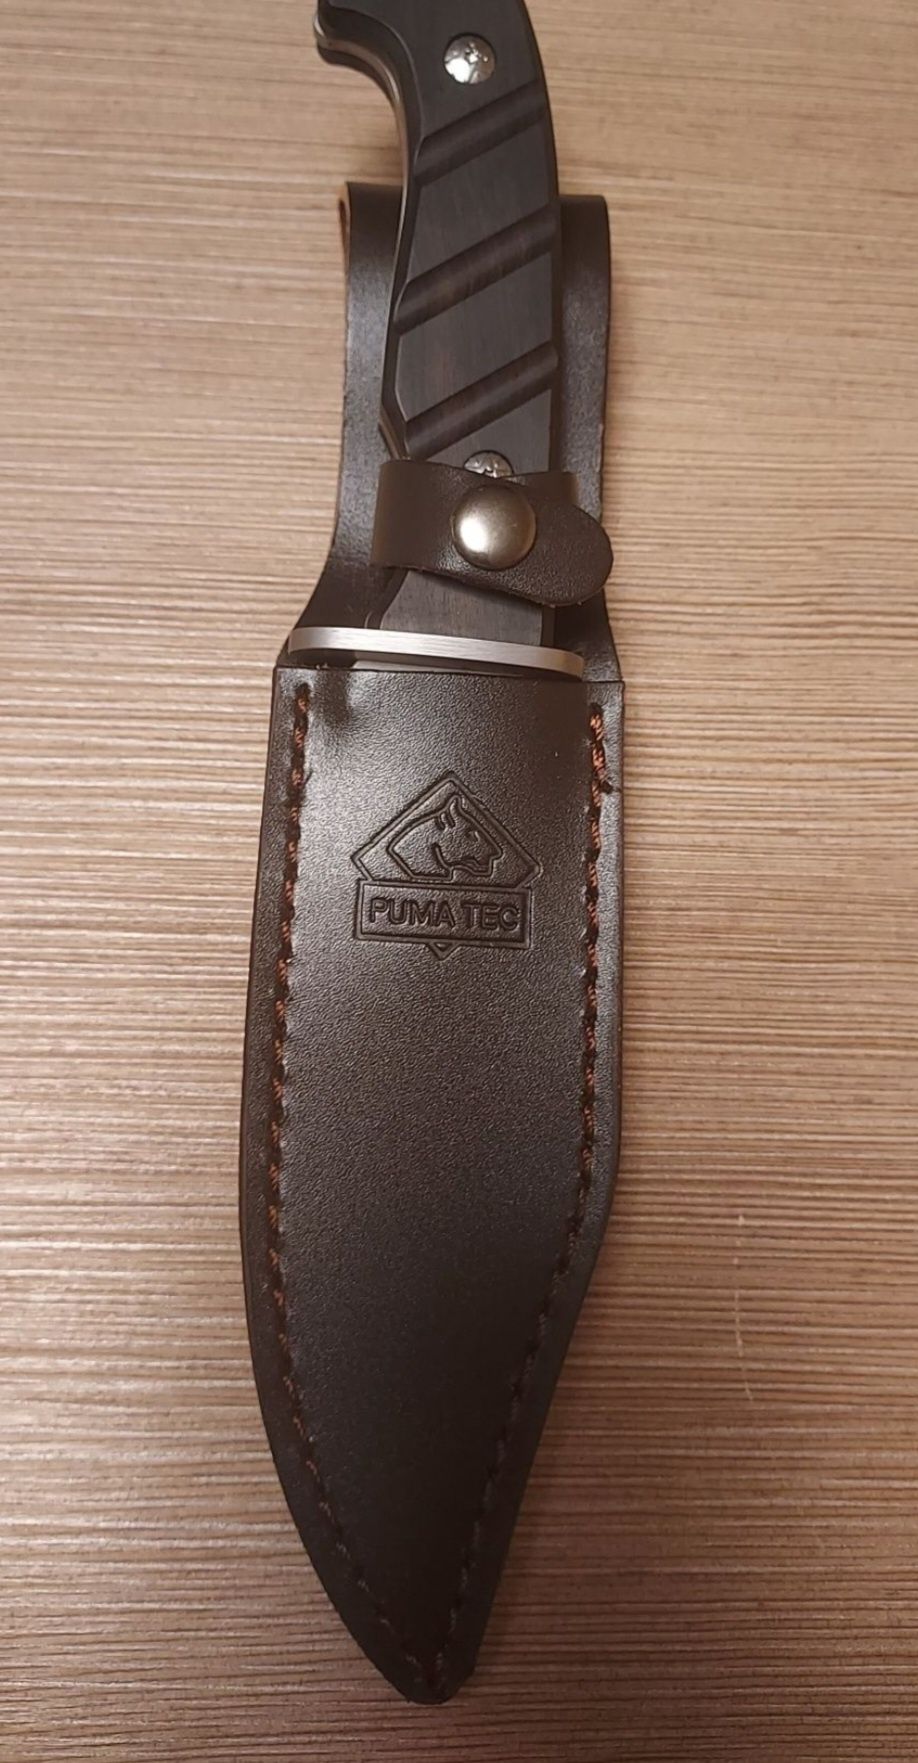 Чисто Нов оригинален ловен Нож PUMA на Sollingen.
Стилен, масивен, удо